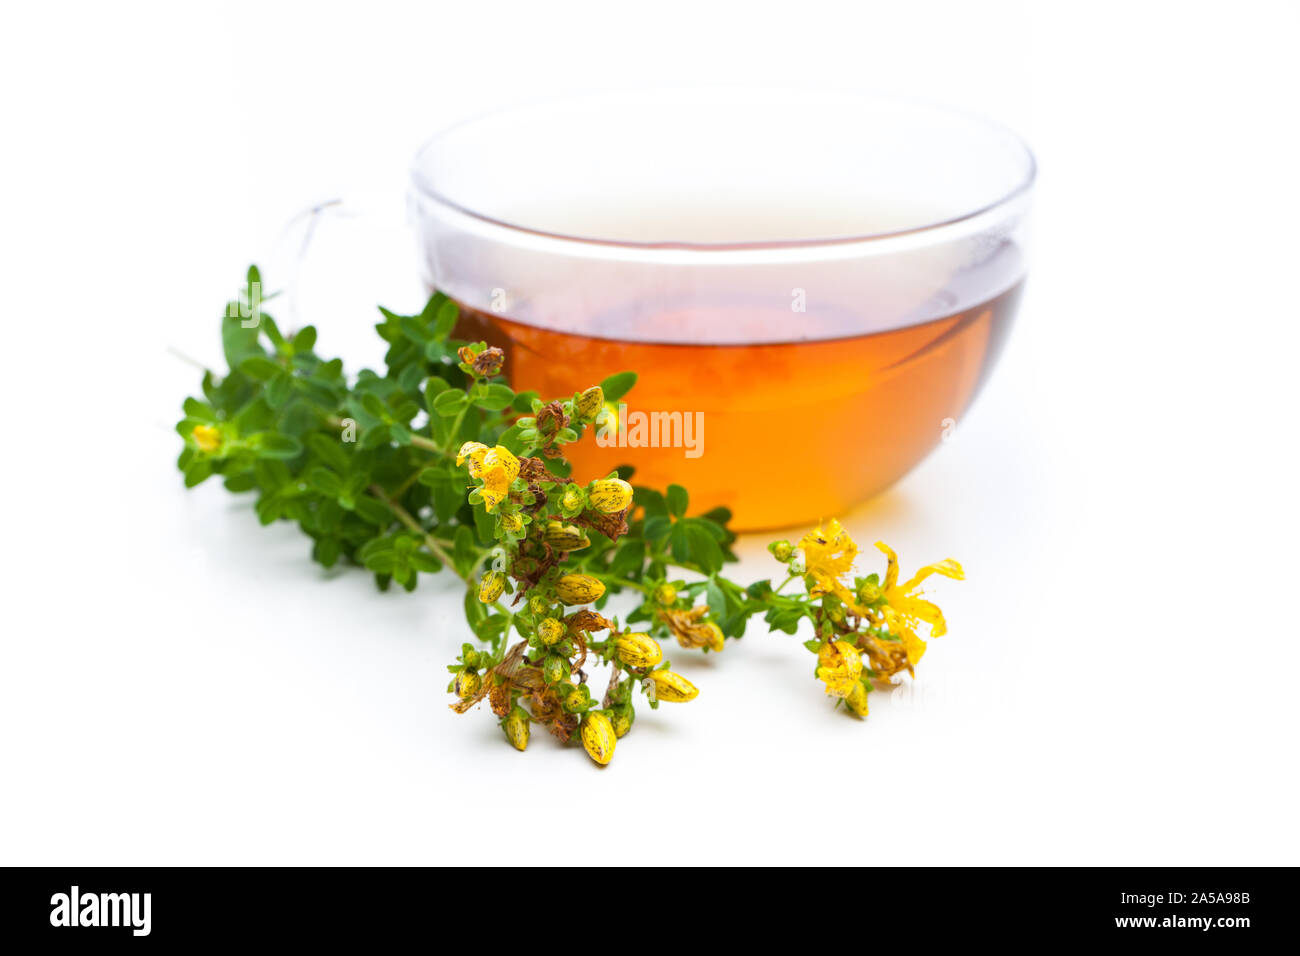 Piante di guarigione: erba di San Giovanni (Hypericum perforatum) e tè di piante con fiori Foto Stock